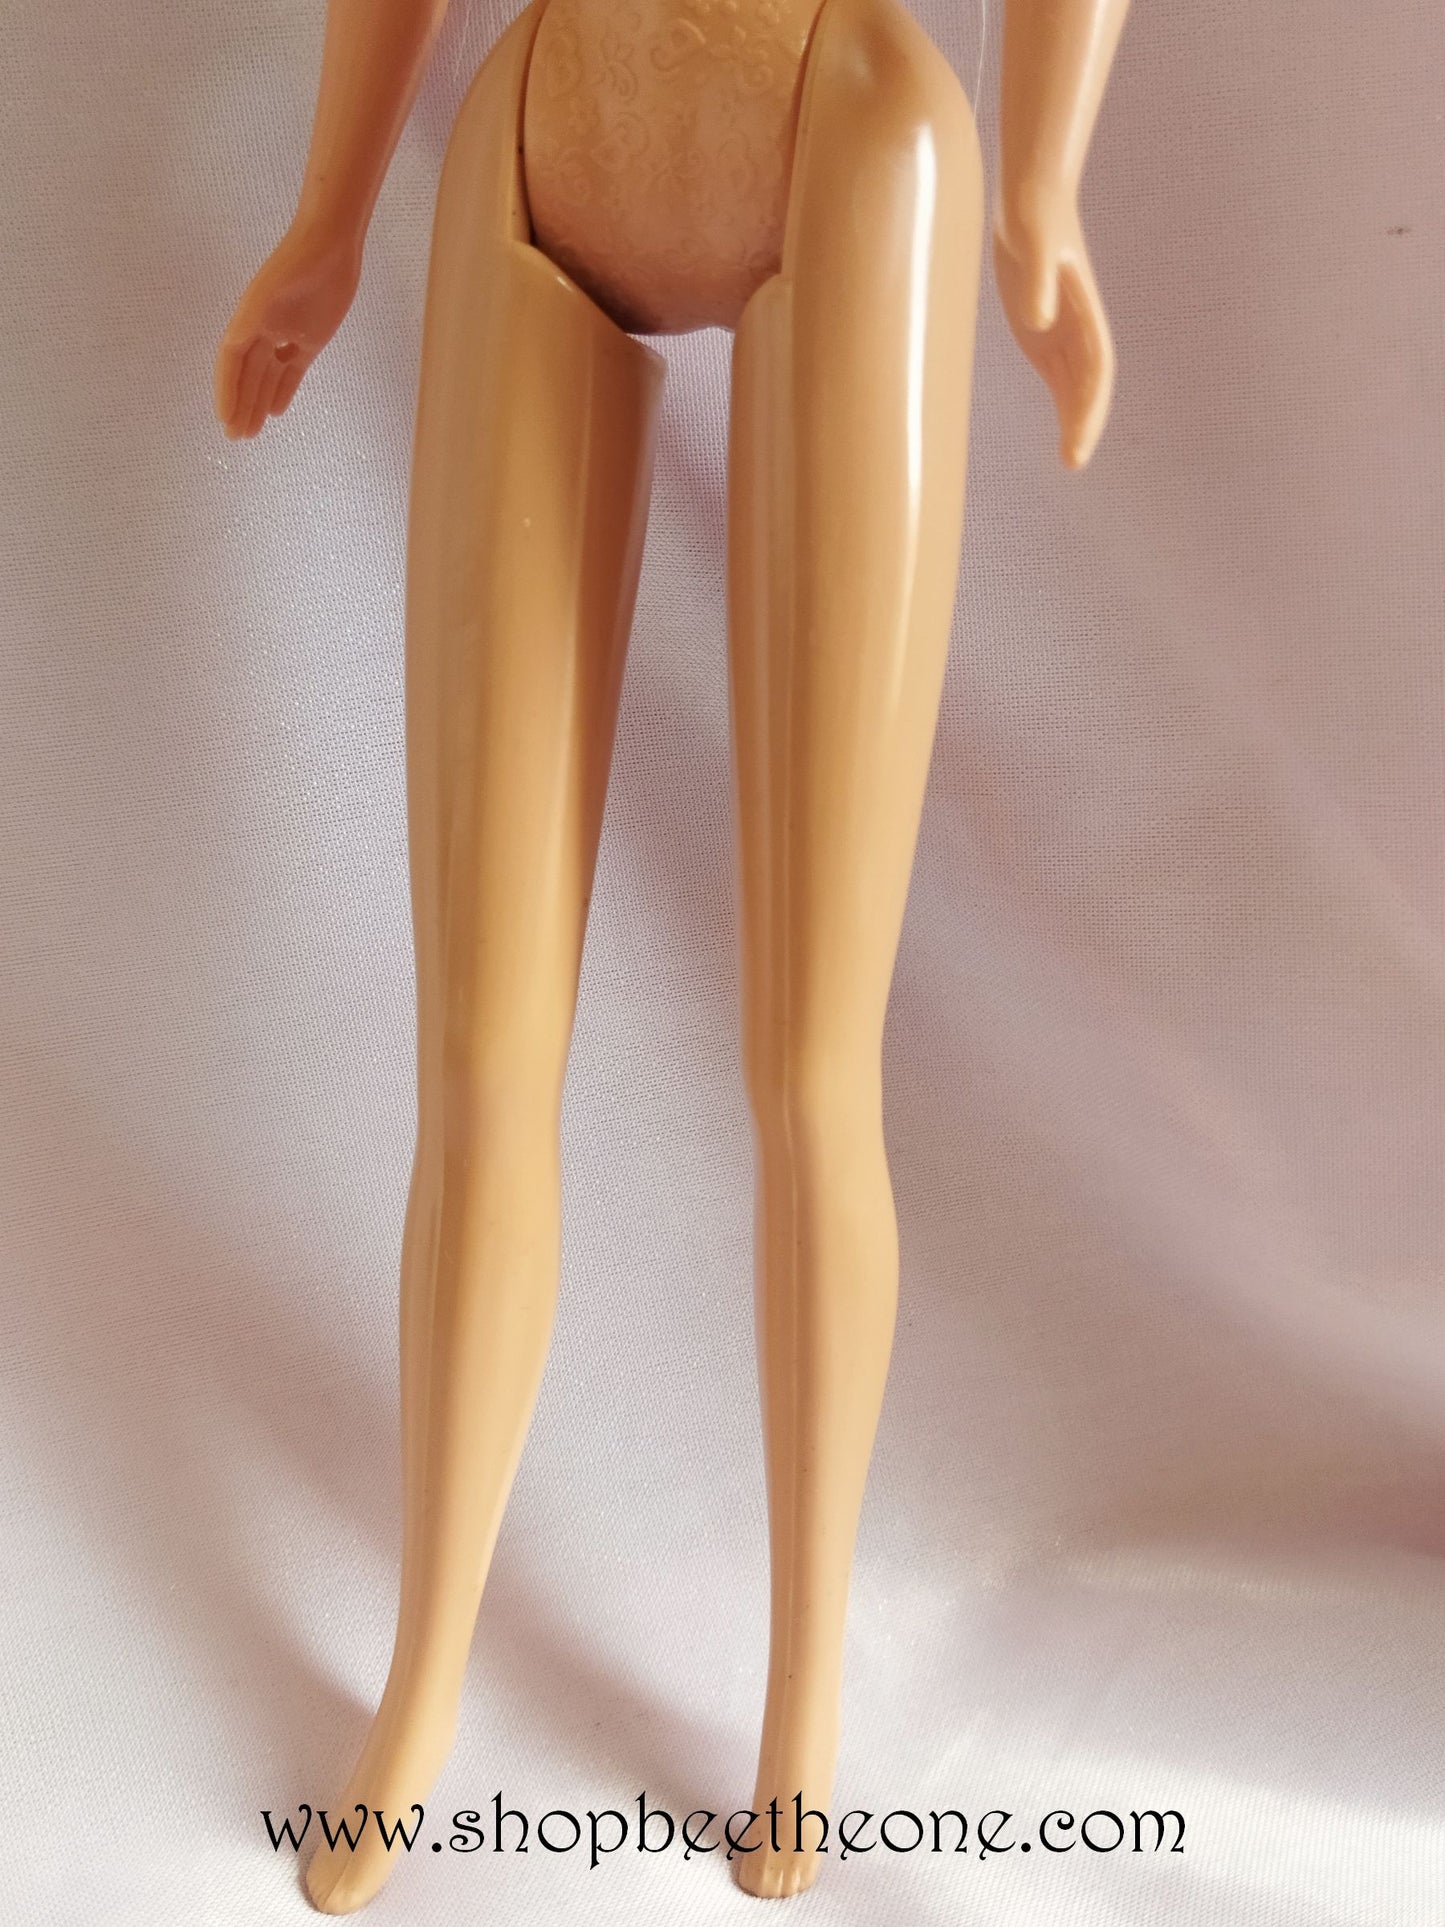 Barbie Reine des Fleurs (Blossom Beauty) - Mattel 1997 - Poupée nue - Vêtement